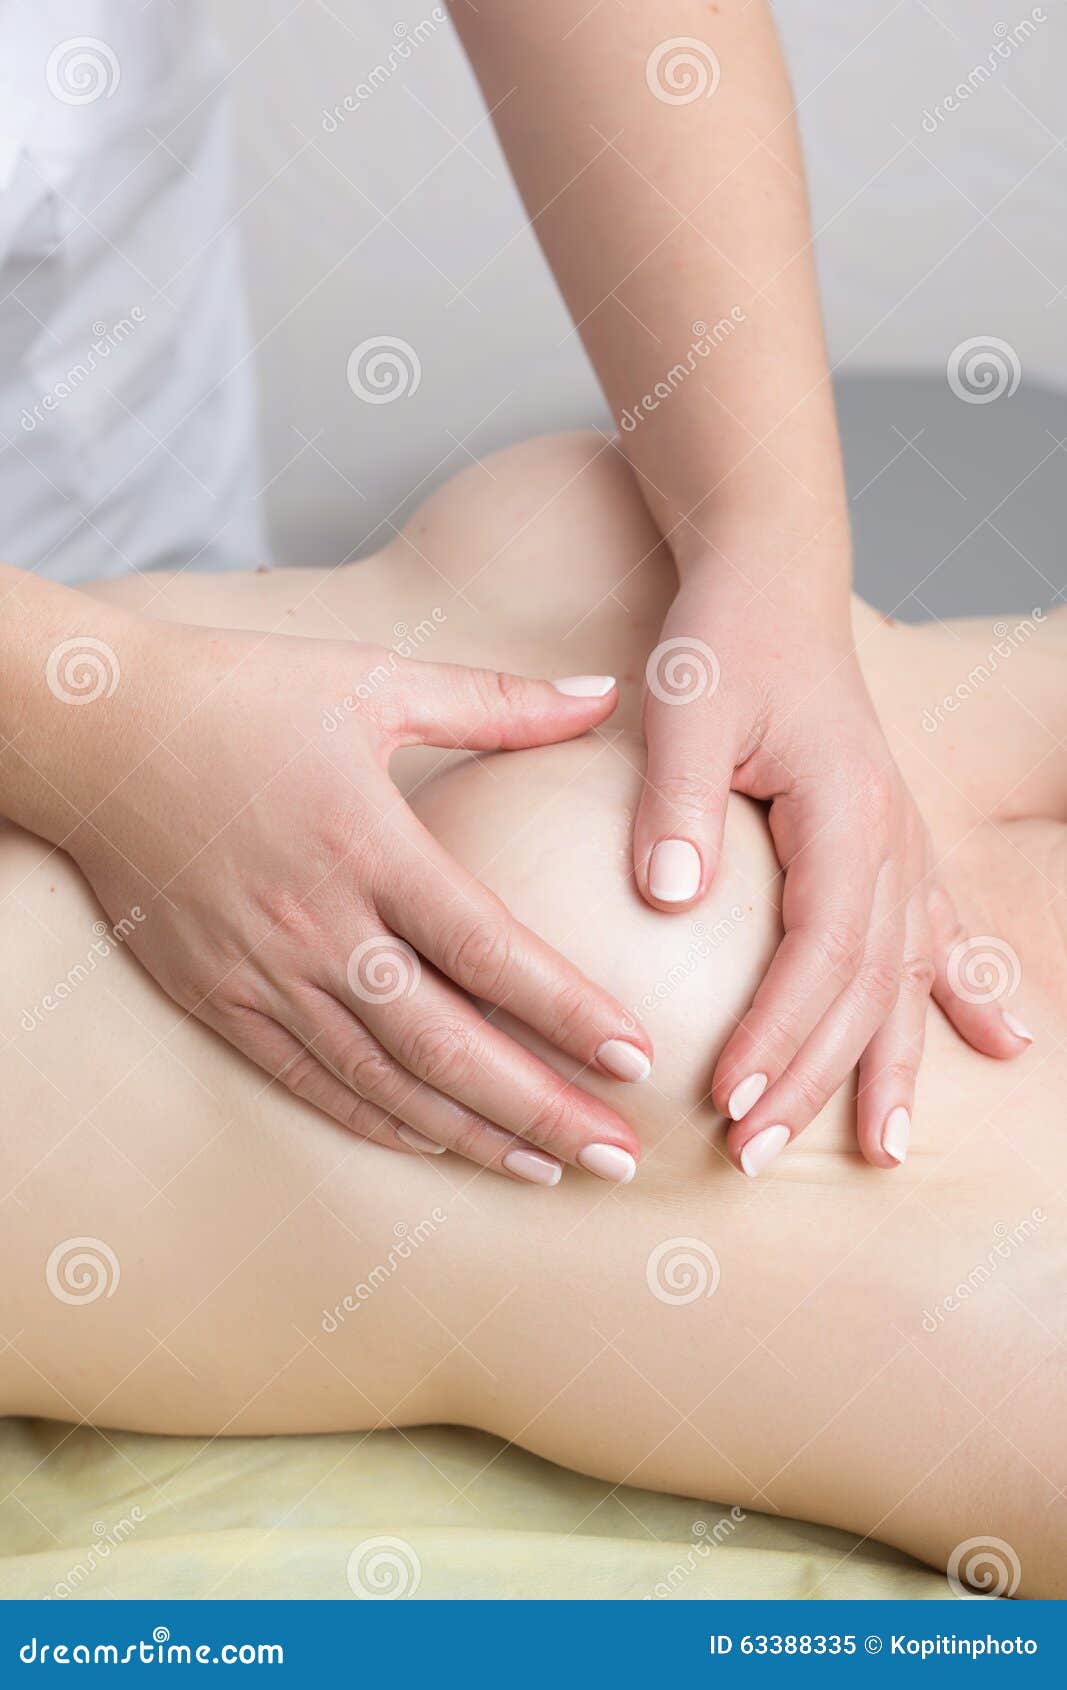 массаж грудью название фото 15